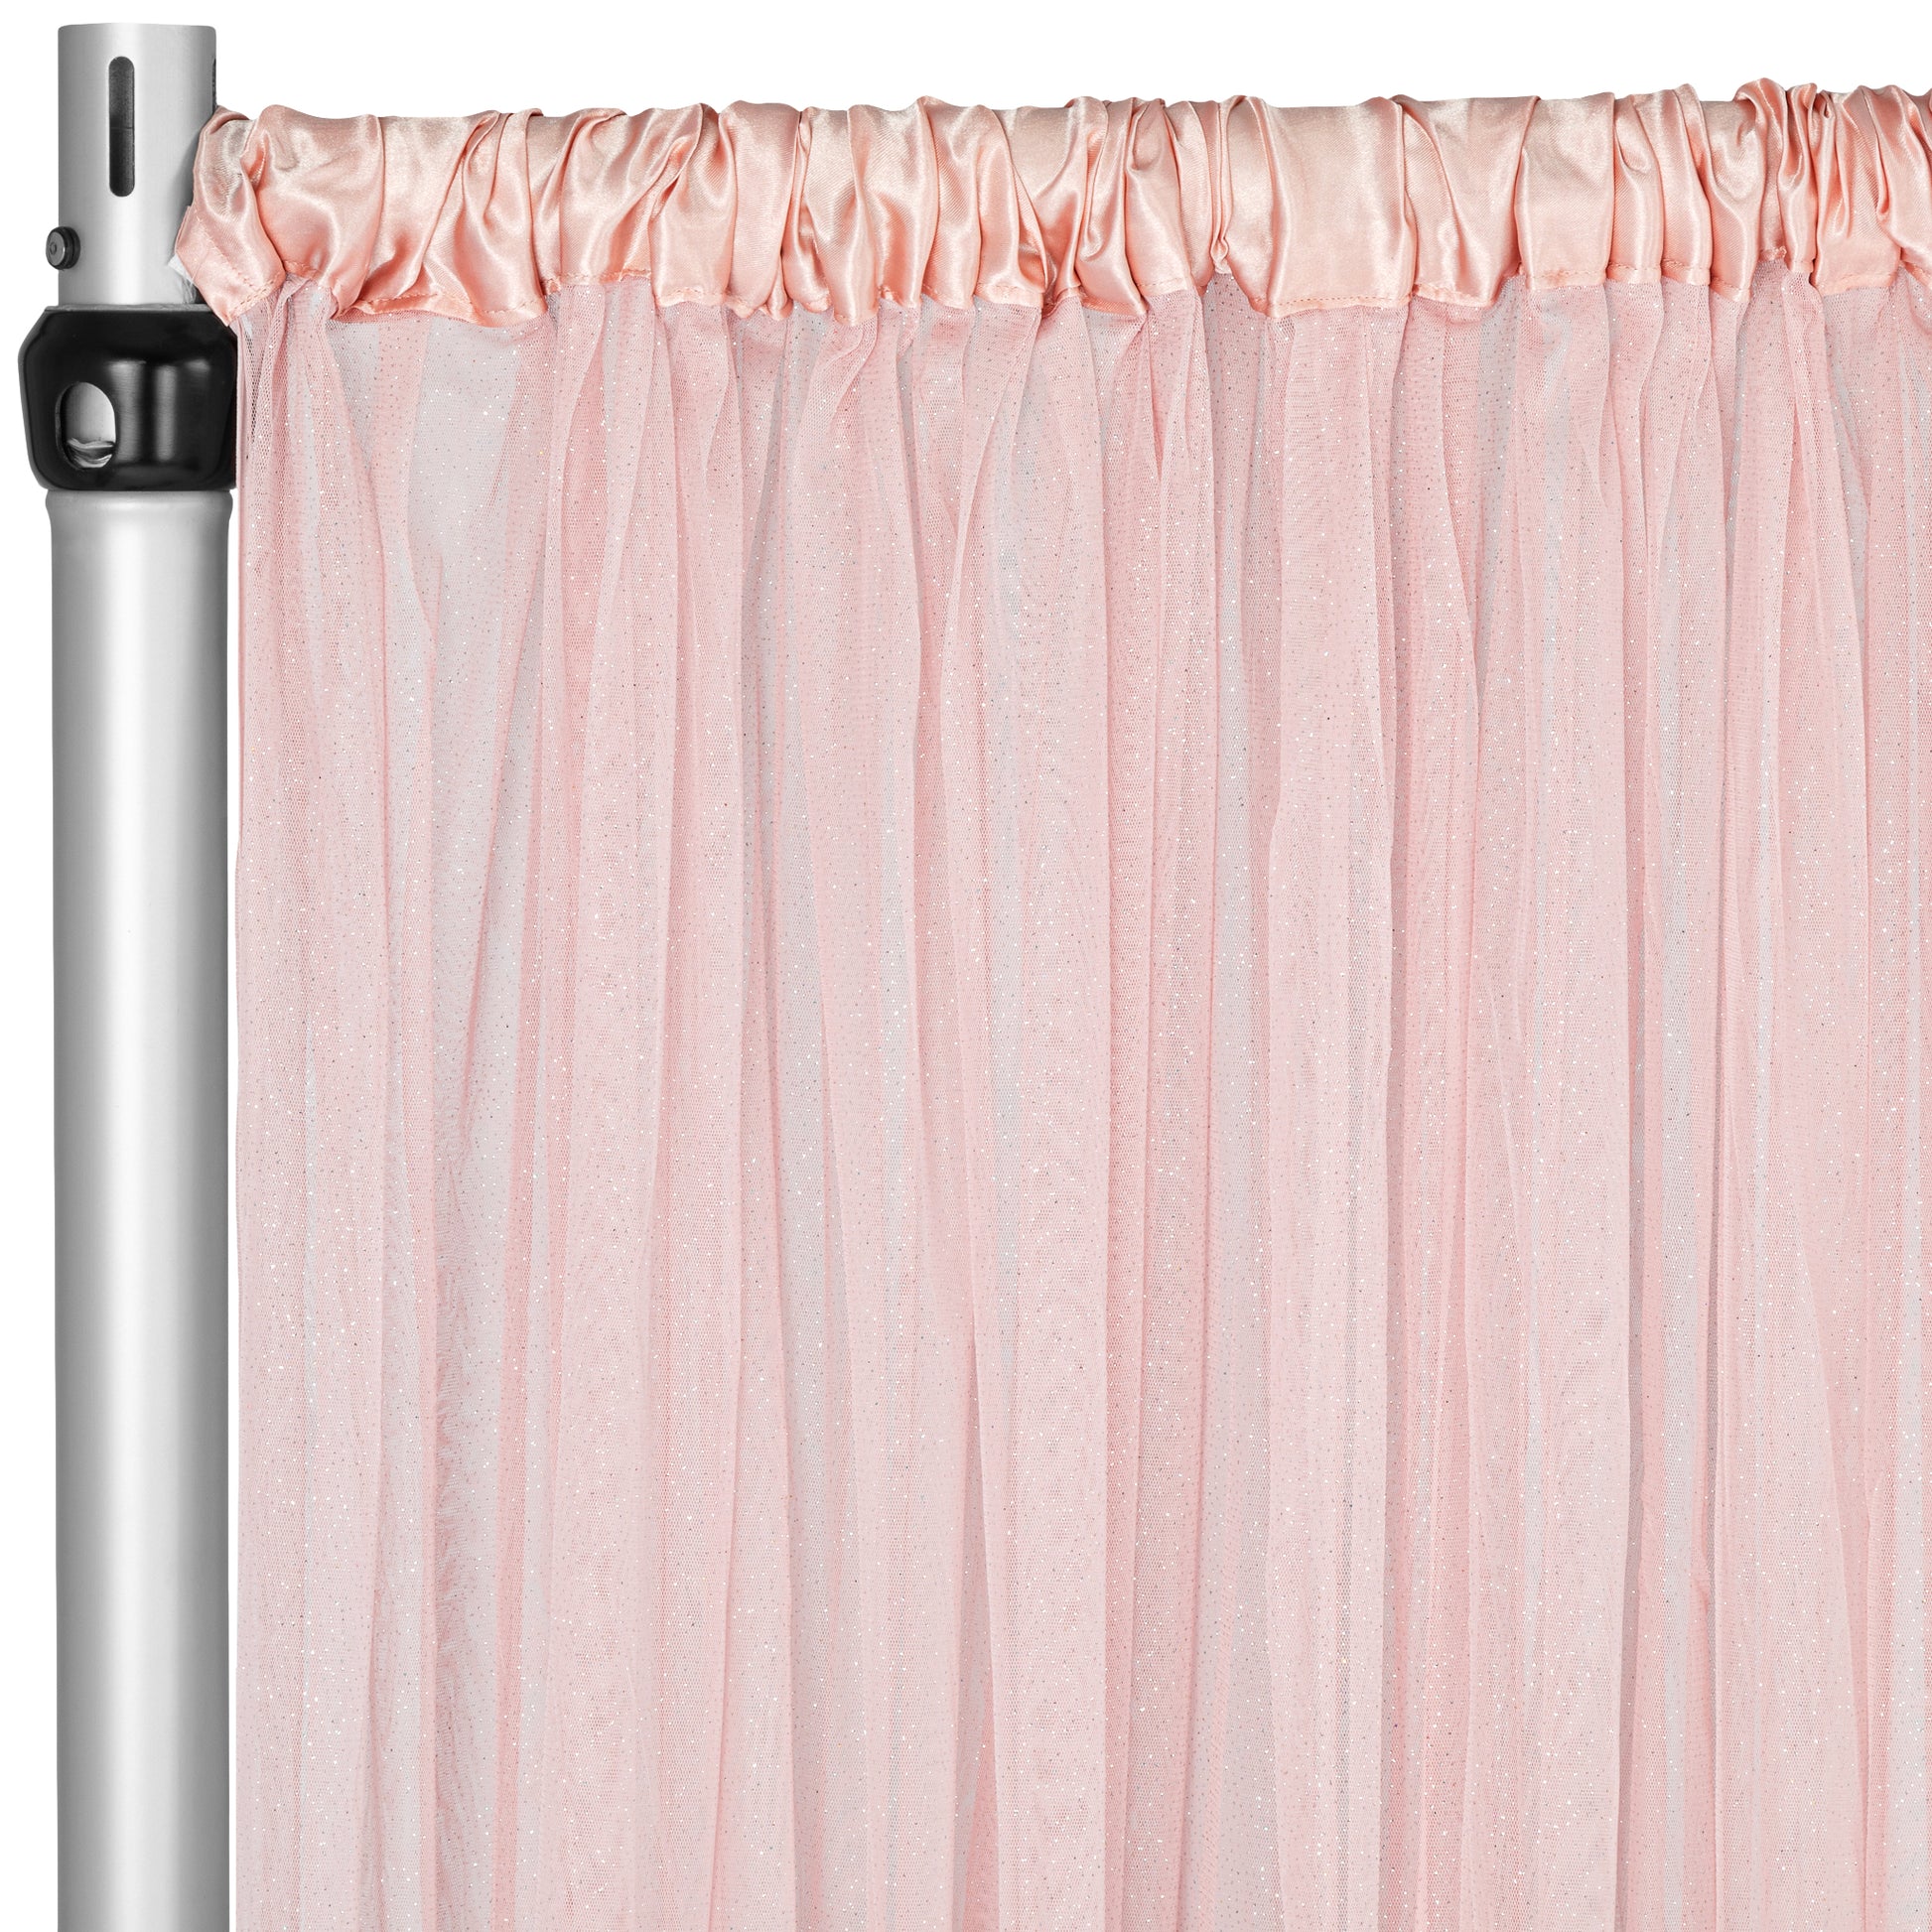 Glitter Tulle Tutu 10ft H x 56" W Drape/Backdrop Curtain Panel - Dusty Rose/Mauve